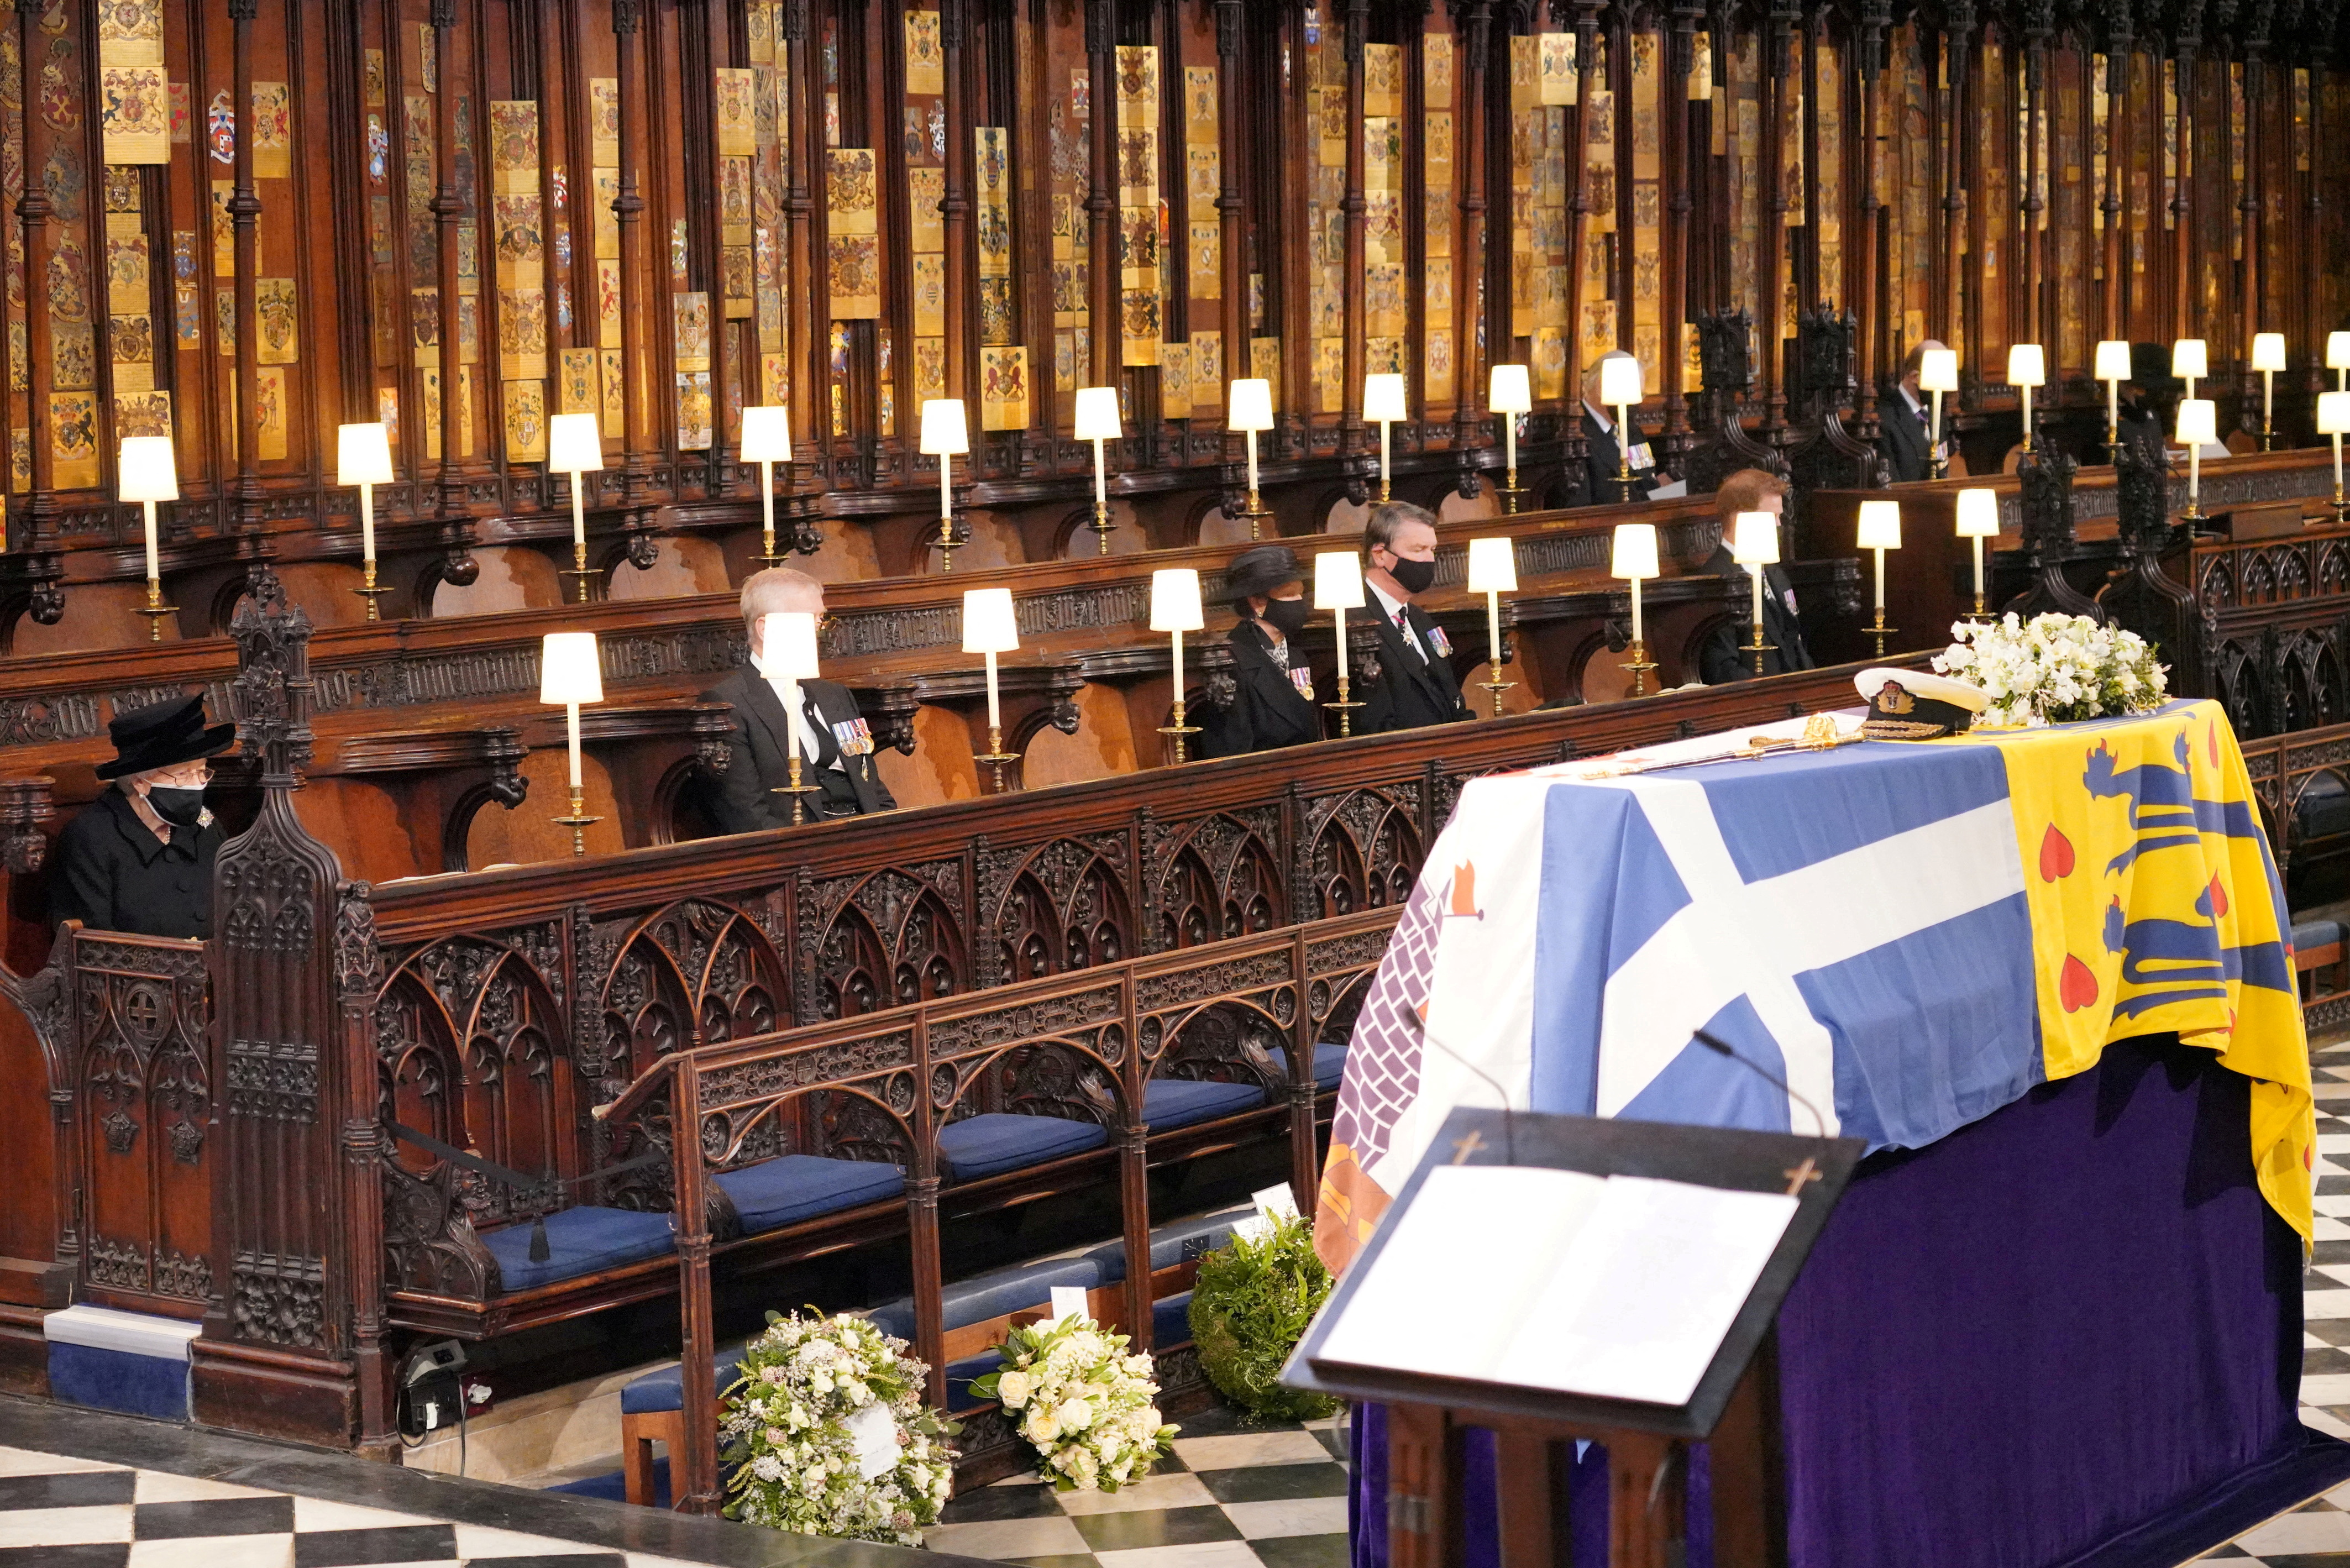 FOTO DE ARCHIVO: La reina Isabel II de Gran Bretaña mira el féretro de su marido, el príncipe británico Felipe, fallecido a los 99 años, durante su servicio fúnebre en la capilla de San Jorge, en Windsor, Gran Bretaña, el 17 de abril de 2021. Jonathan Brady/Pool vía REUTERS